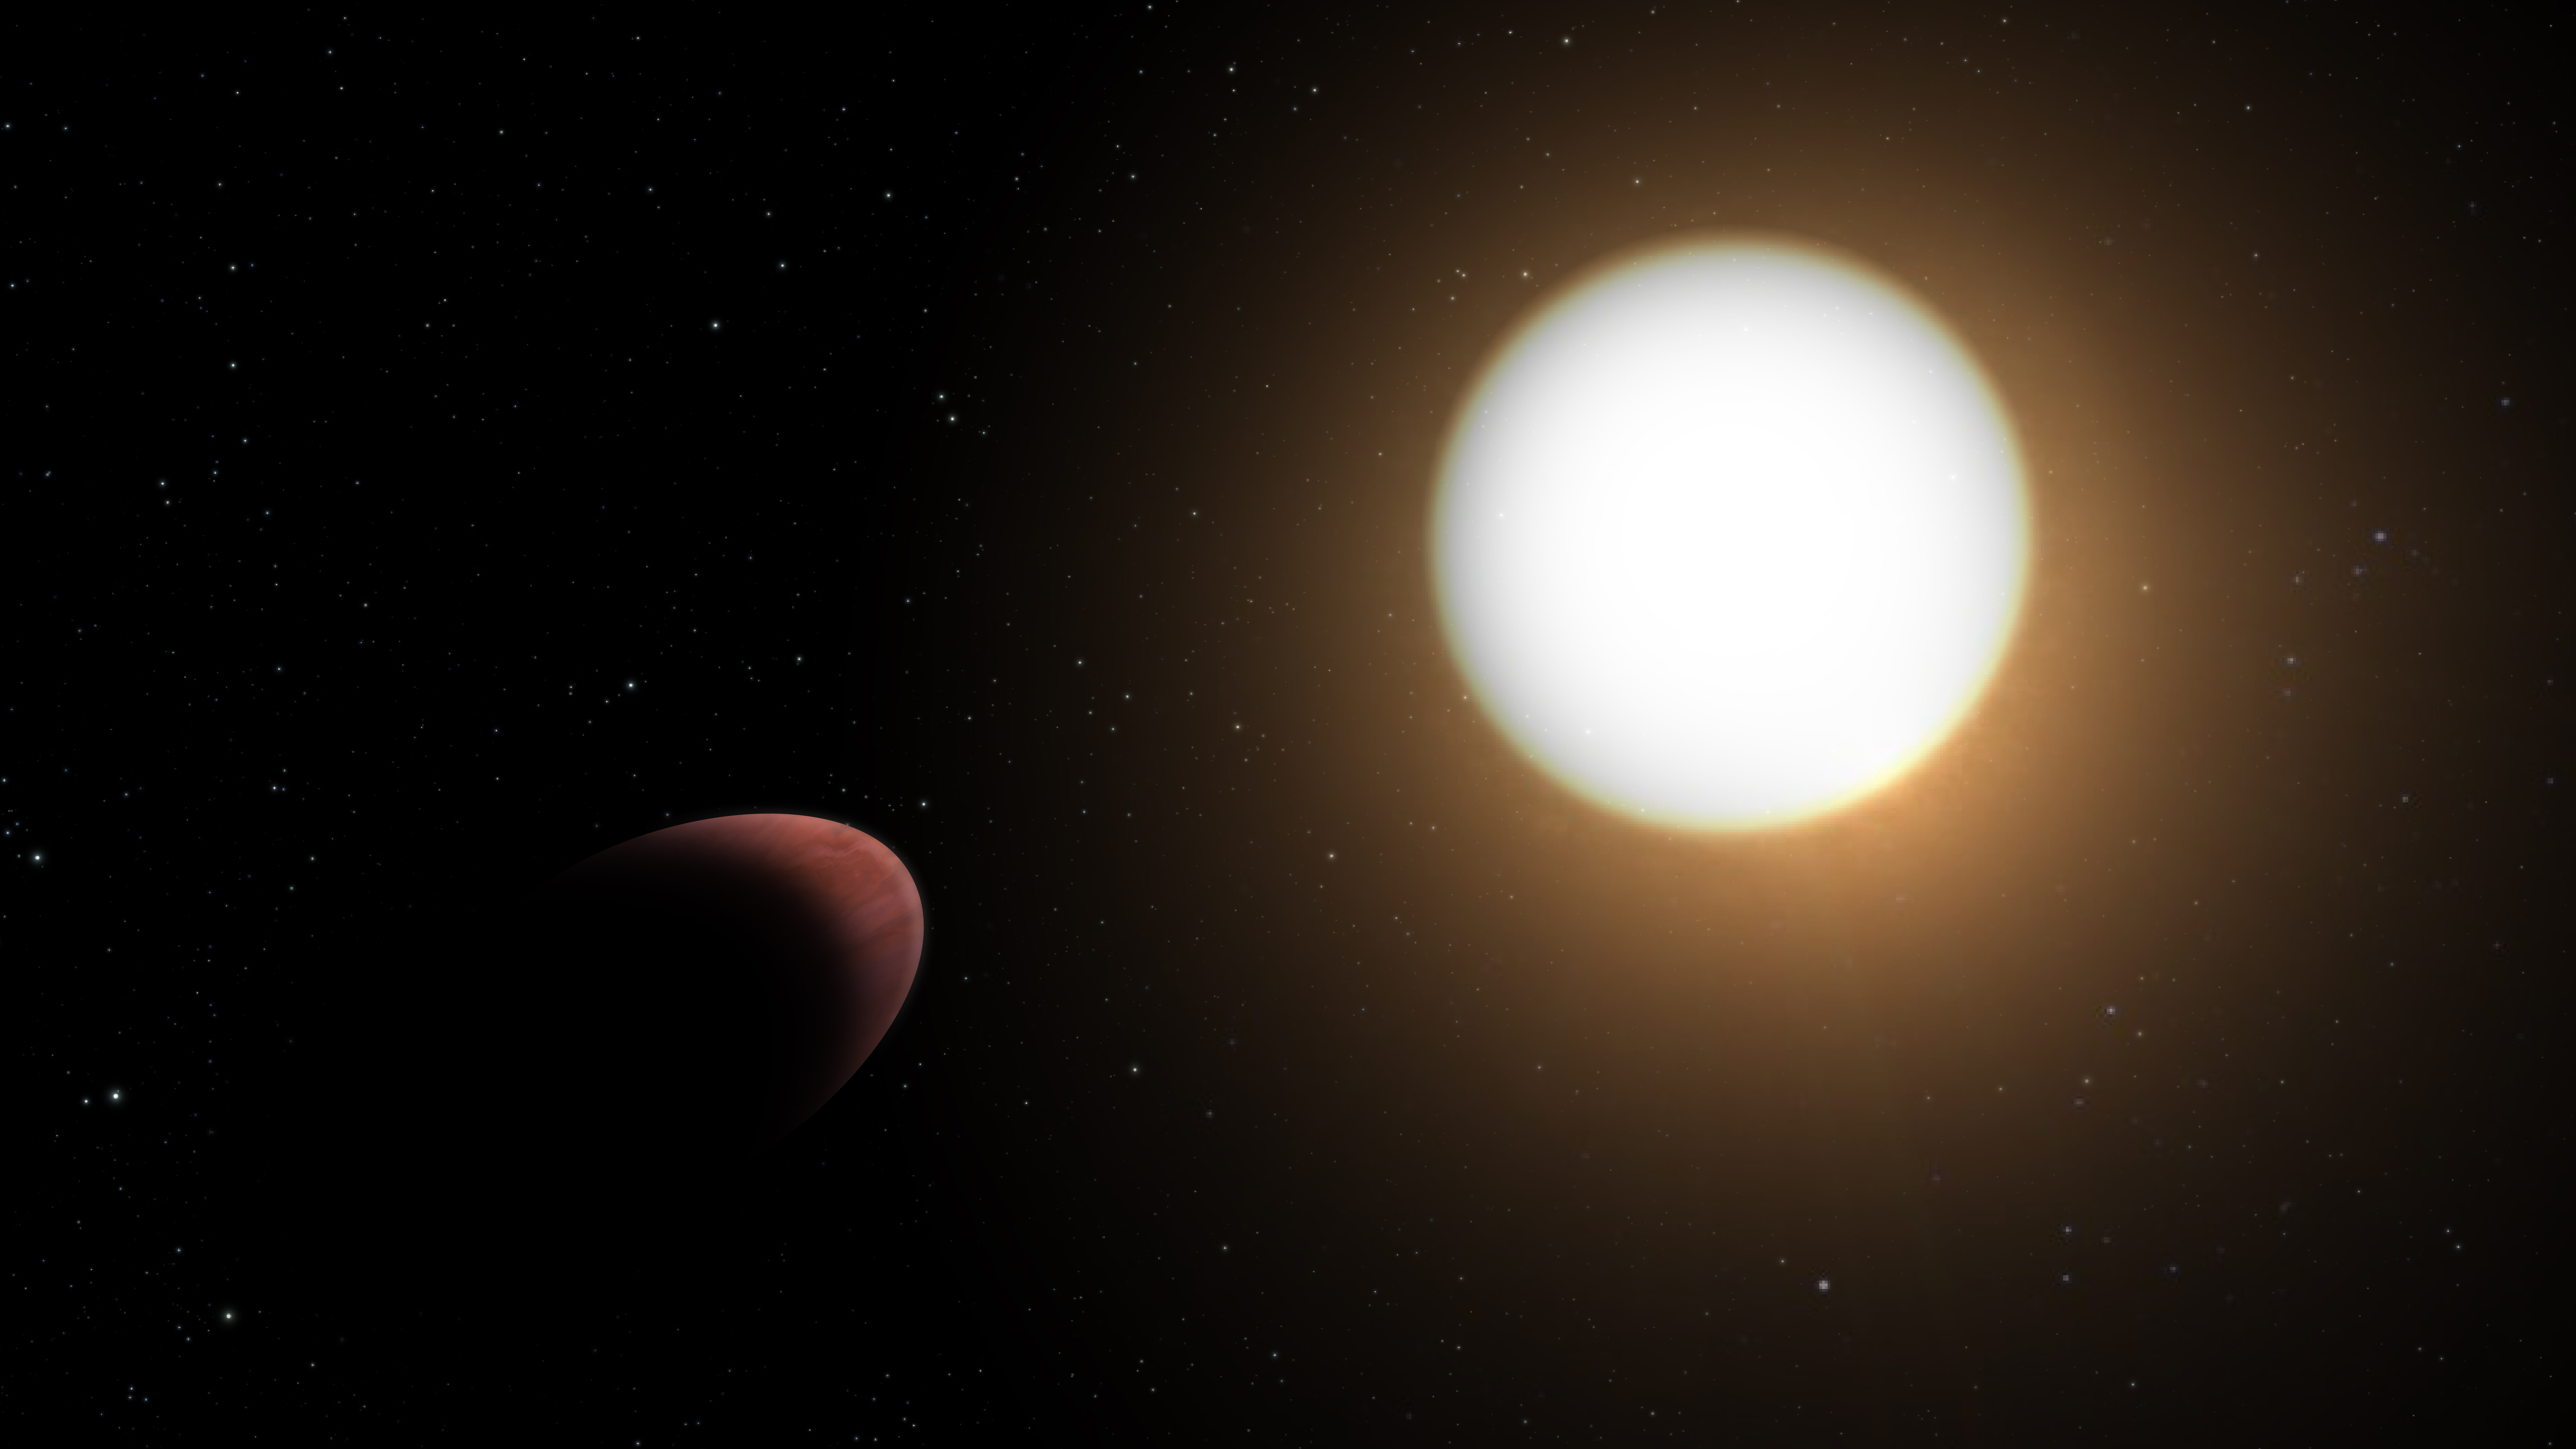 Künstlerische Darstellung des Planeten WASP-103b und seines Wirtssterns: Daten des Weltraumteleskops CHEOPS haben gezeigt, dass der Exoplanet, der seinen Wirtsstern innerhalb eines Tages umkreist, eher die Form eines Rugbyballs als die einer Kugel hat. Der Planet mit der Bezeichnung WASP-103b befindet sich im Sternbild Herkules. Er wurde durch die starken Gezeitenkräfte zwischen dem Planeten und seinem Wirtsstern WASP-103 deformiert, der etwa 200 Grad heisser und 1,7 Mal grösser als die Sonne ist.   © ESA